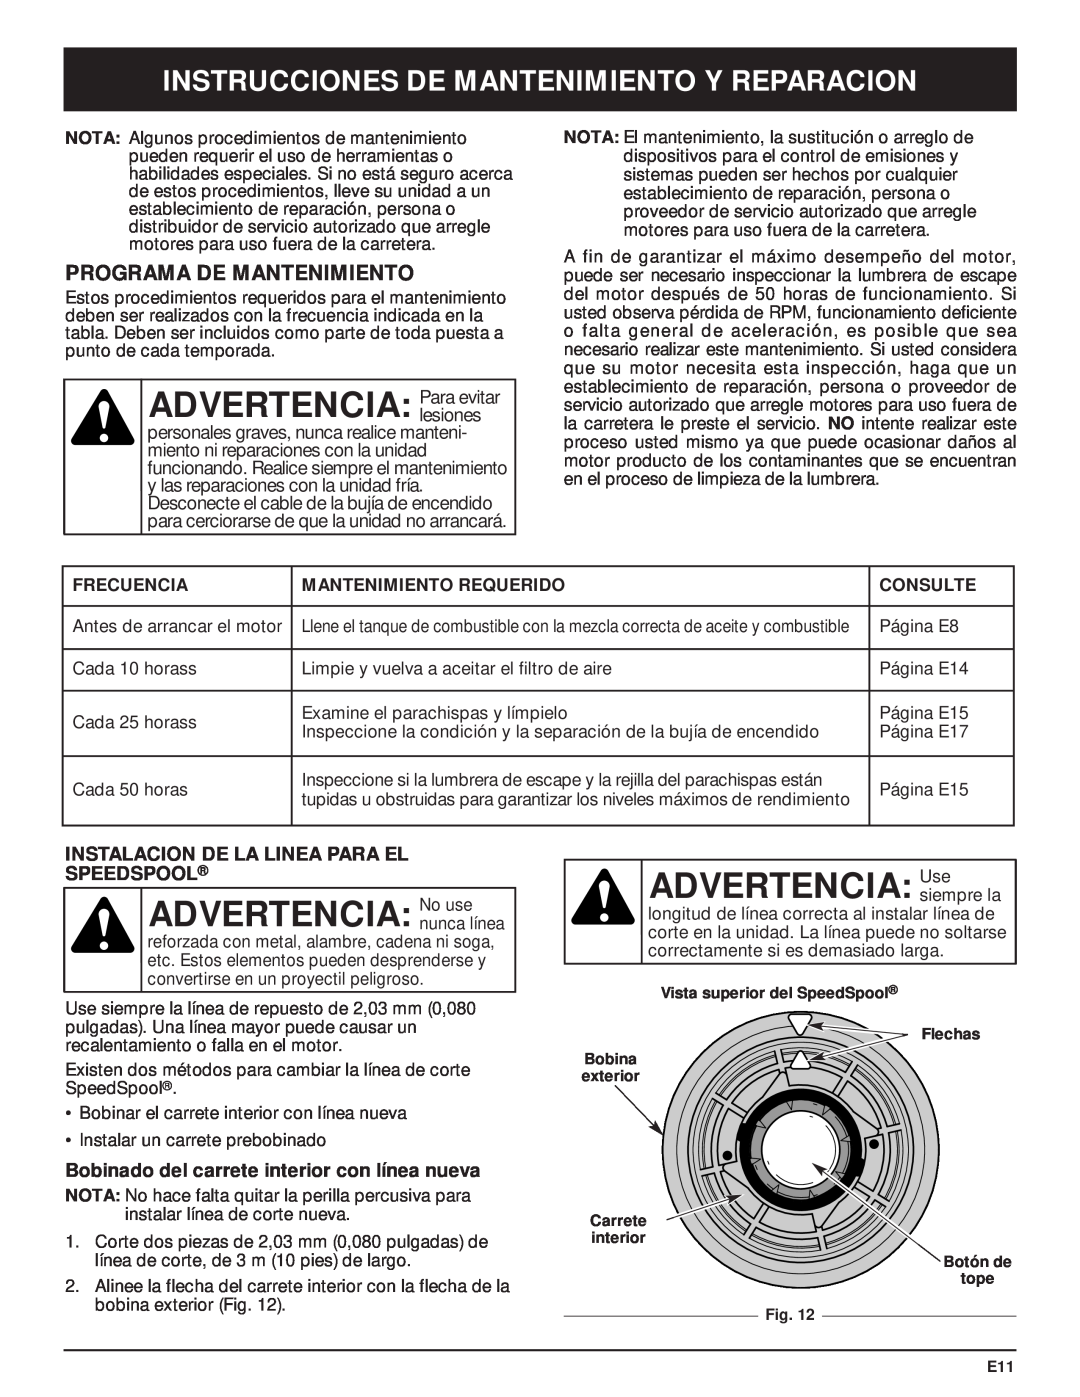 McCulloch MT705 manual ADVERTENCIA Para evitar, ADVERTENCIA No use, ADVERTENCIA Usesiempre la, Programa De Mantenimiento 